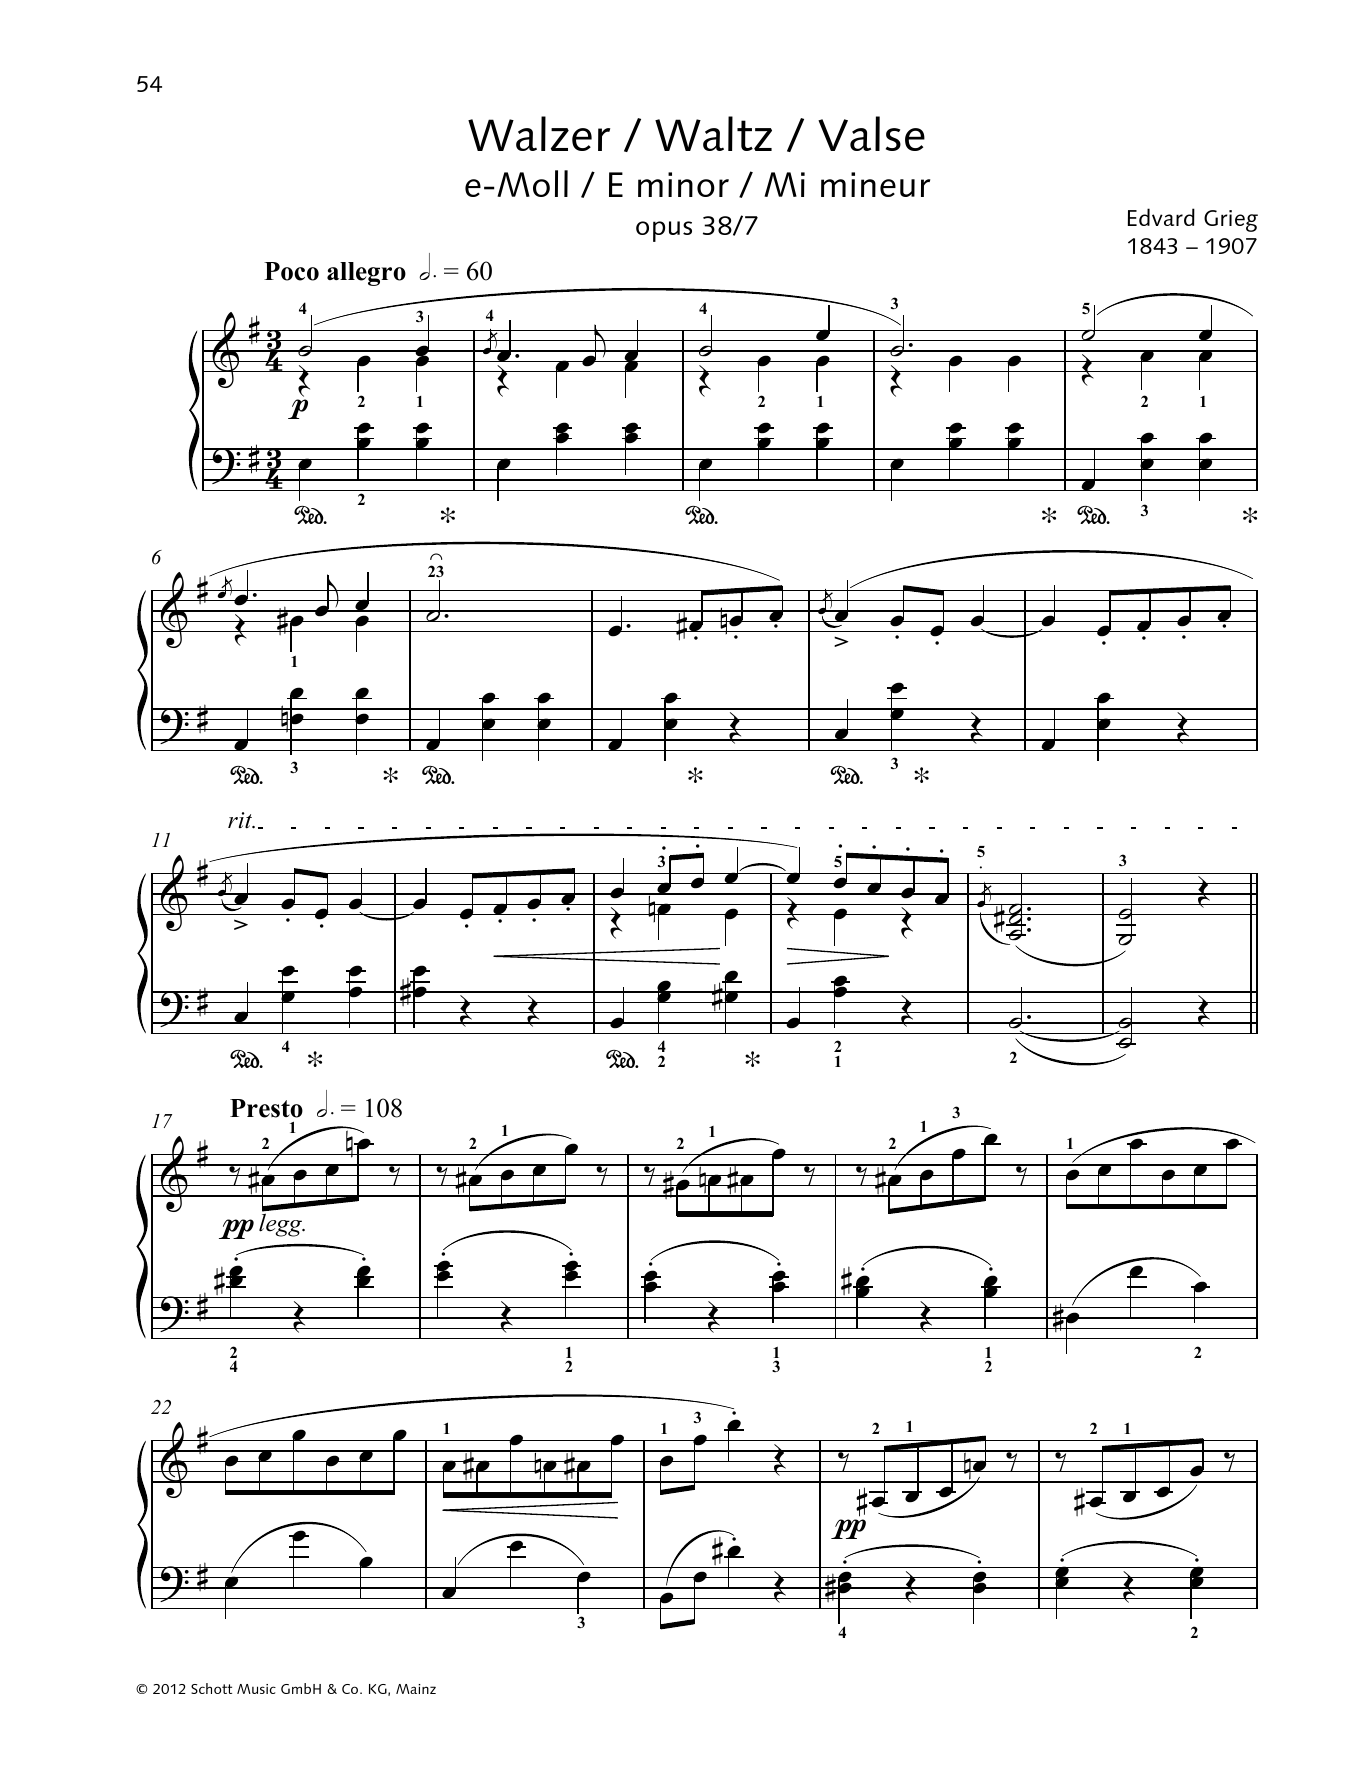 Download Edvard Grieg Waltz E minor Sheet Music